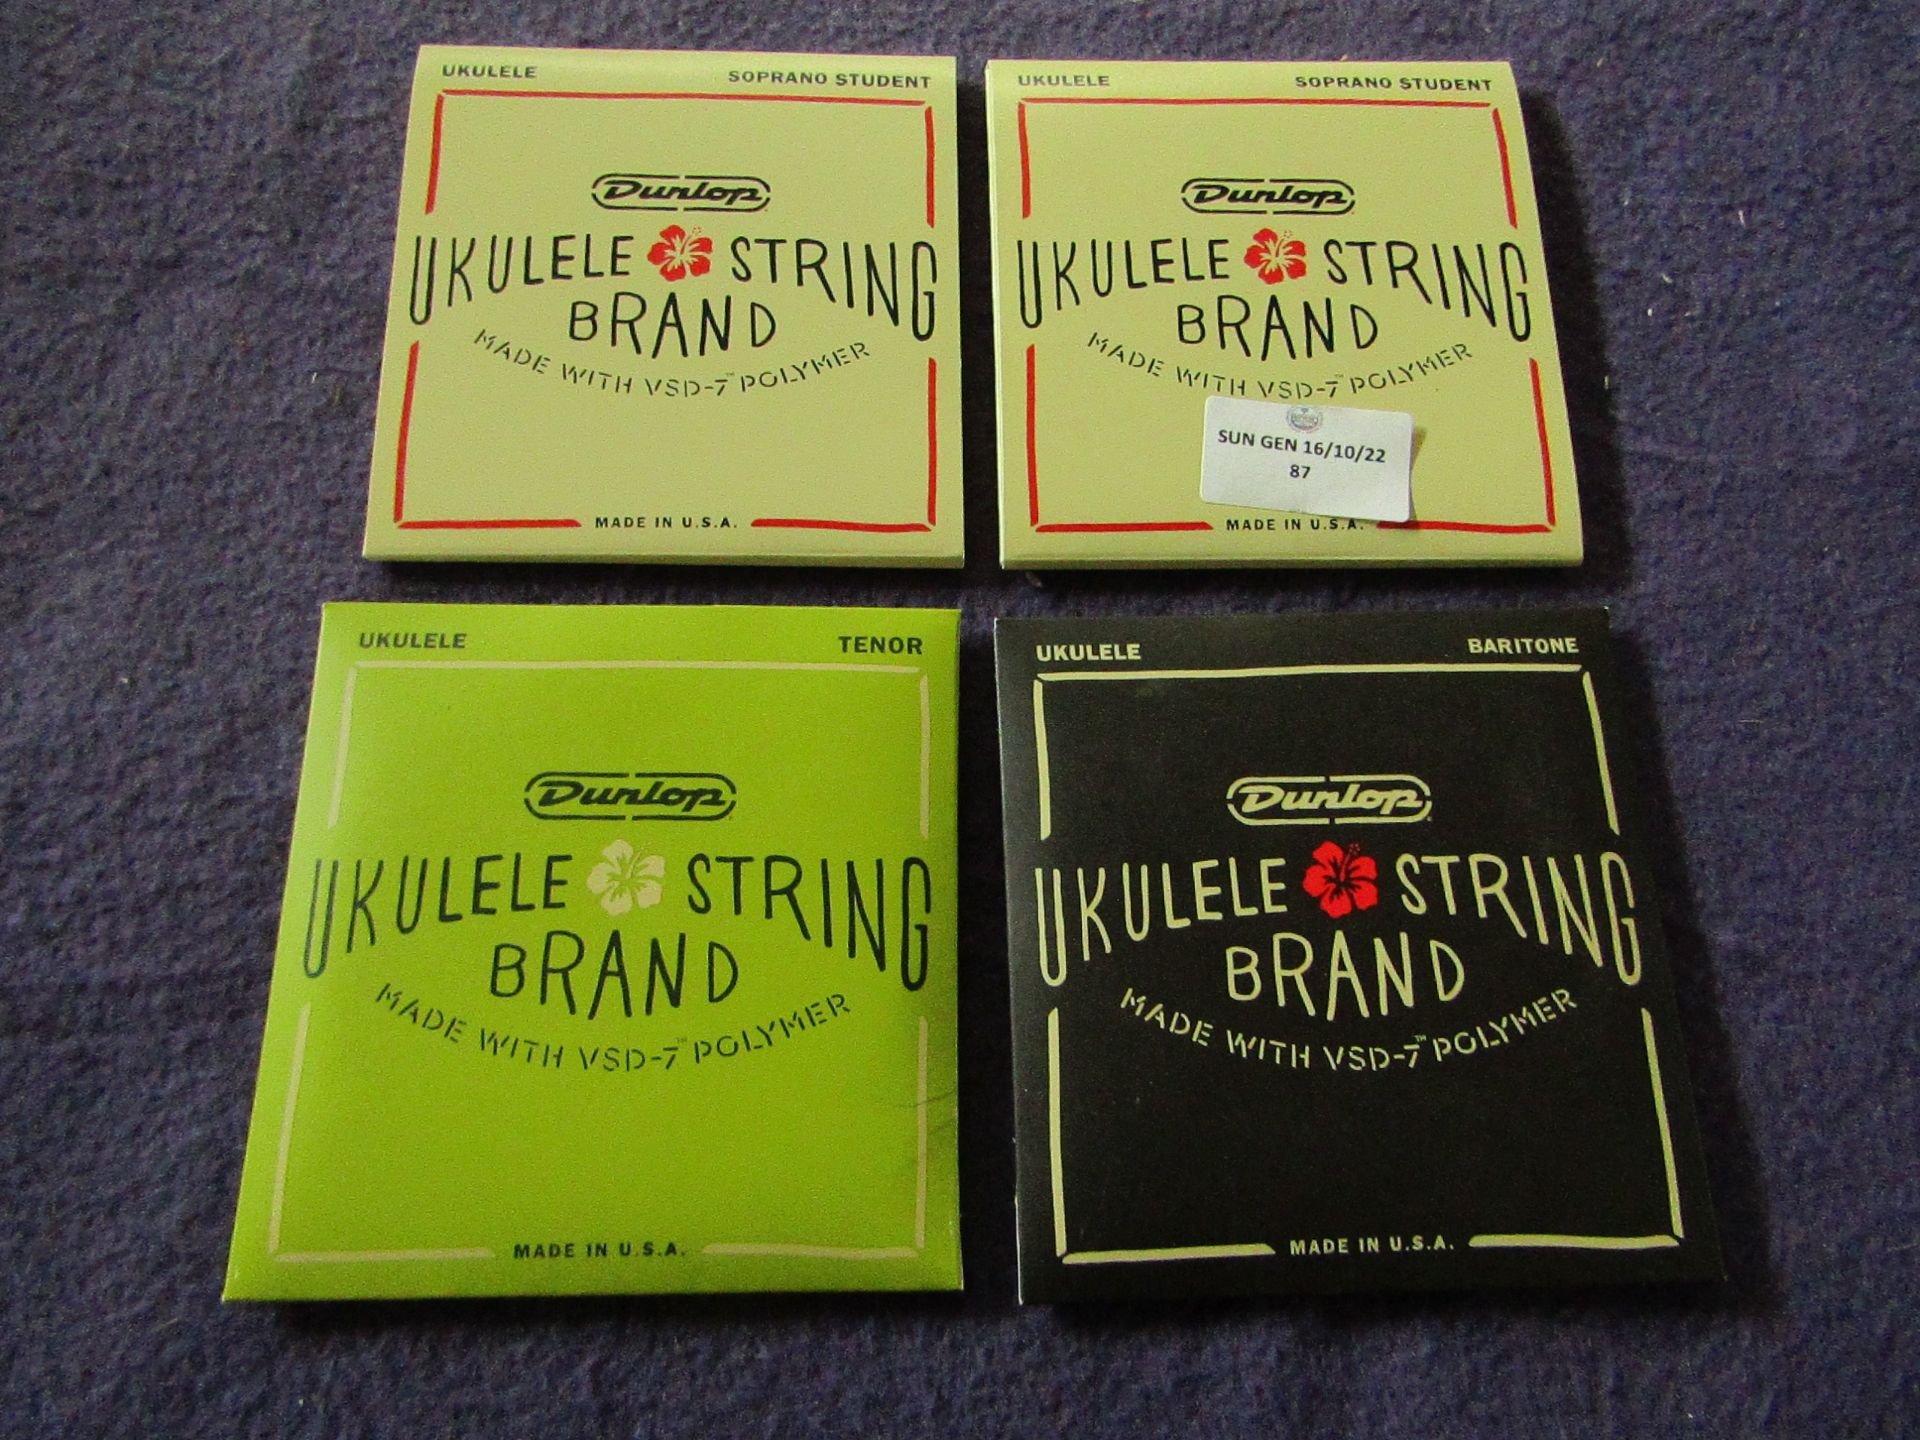 2x Dunlop - Soprano Student Ukulele String - Unused & Boxed. 1x Dunlop - Baritone Ukulele String -